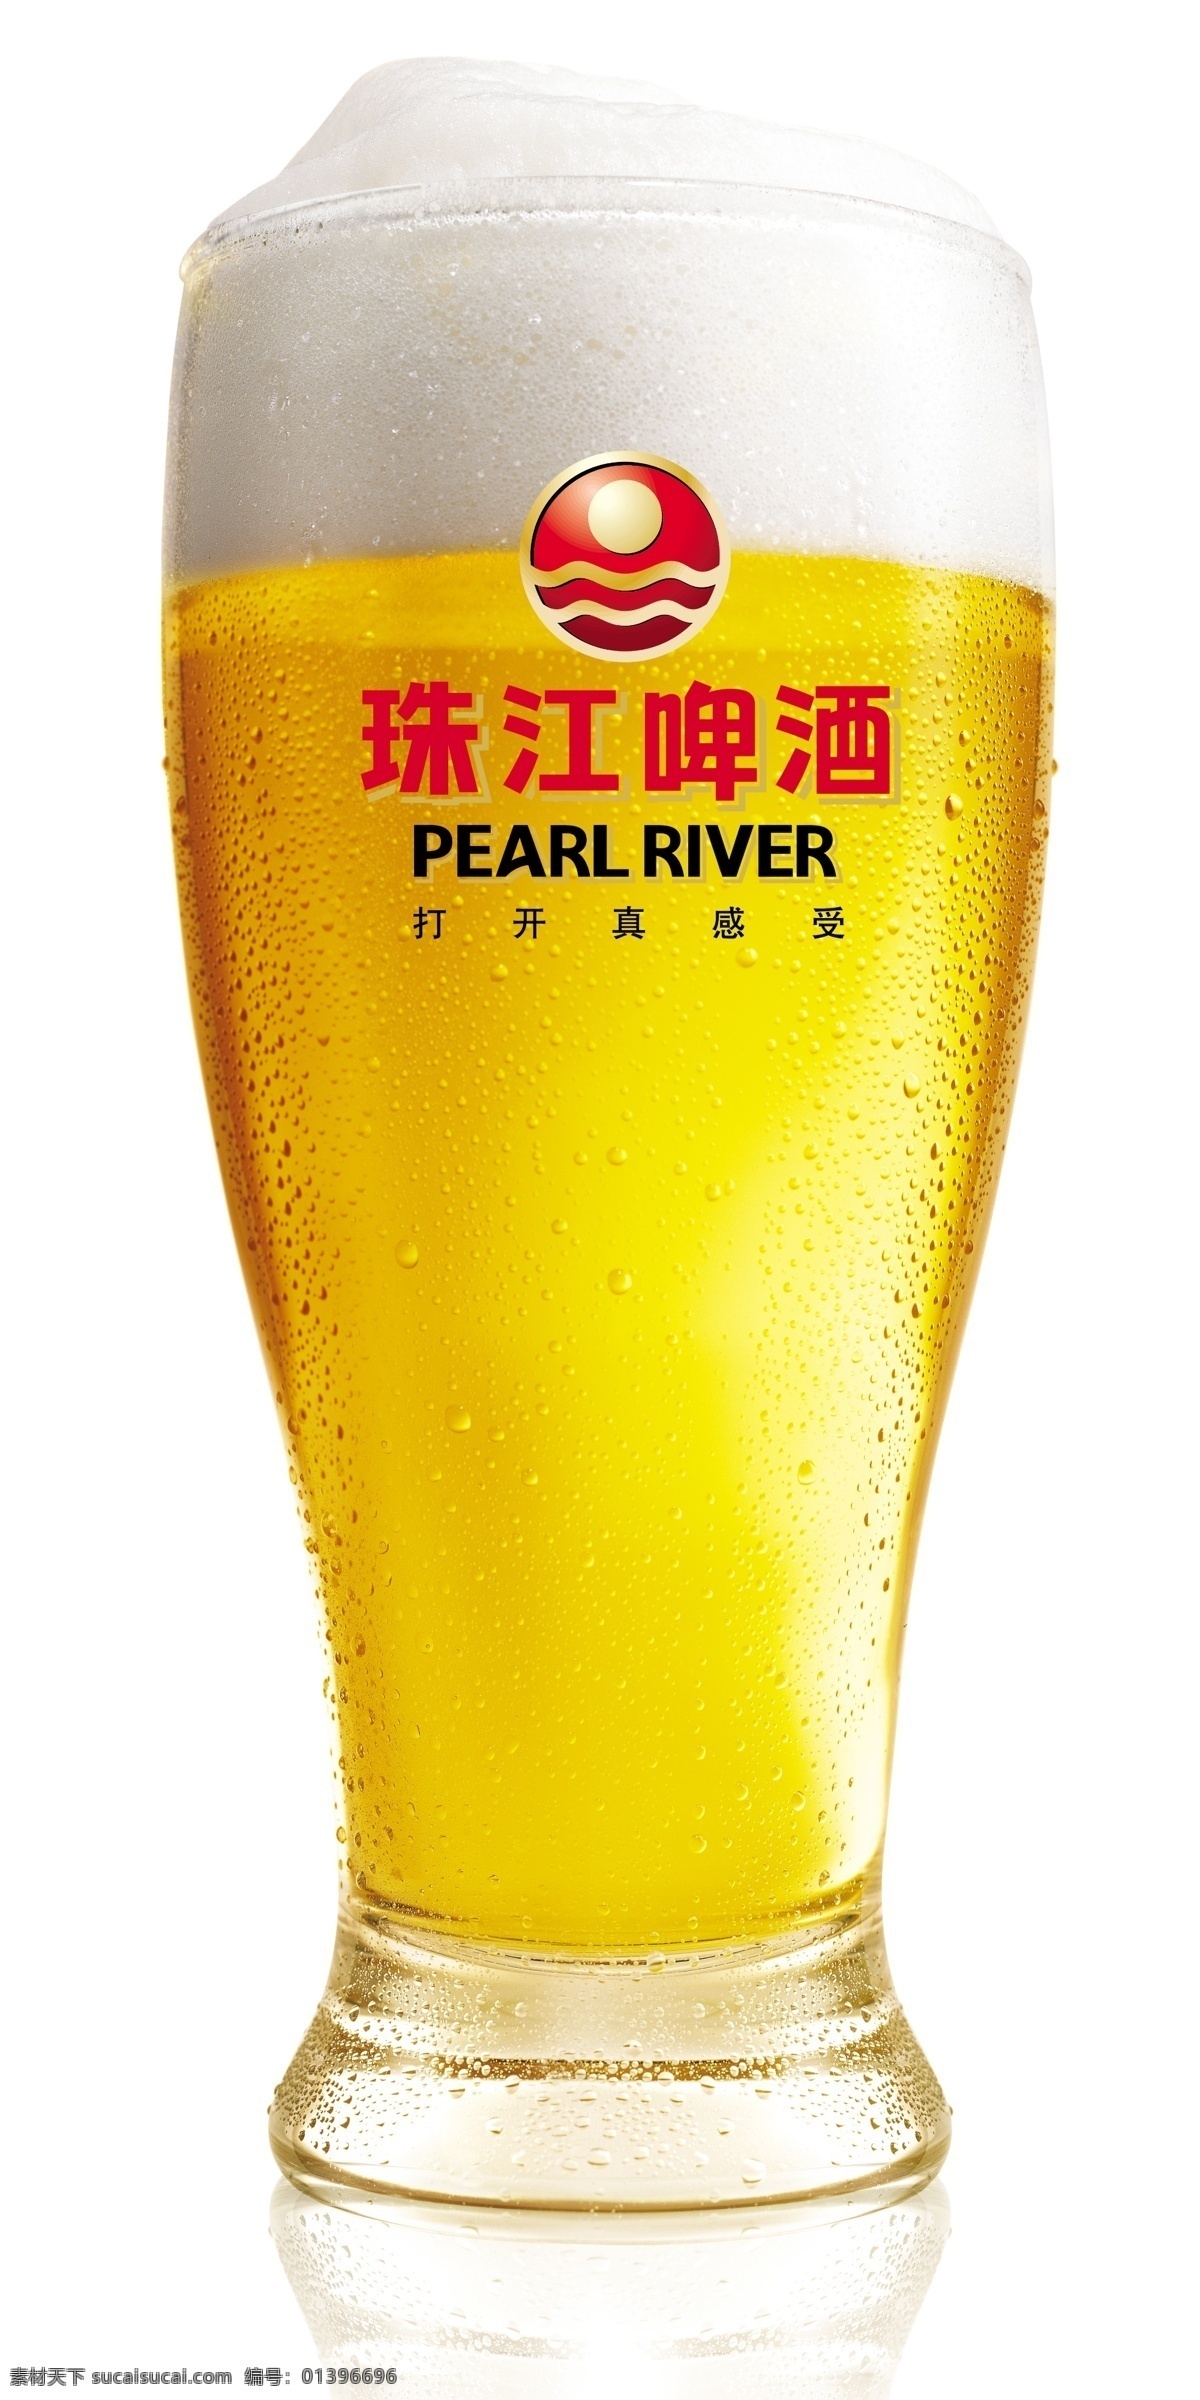 珠江啤酒杯 珠江啤酒 玻璃杯 清爽 清凉 夏天 气泡 广告设计模板 源文件